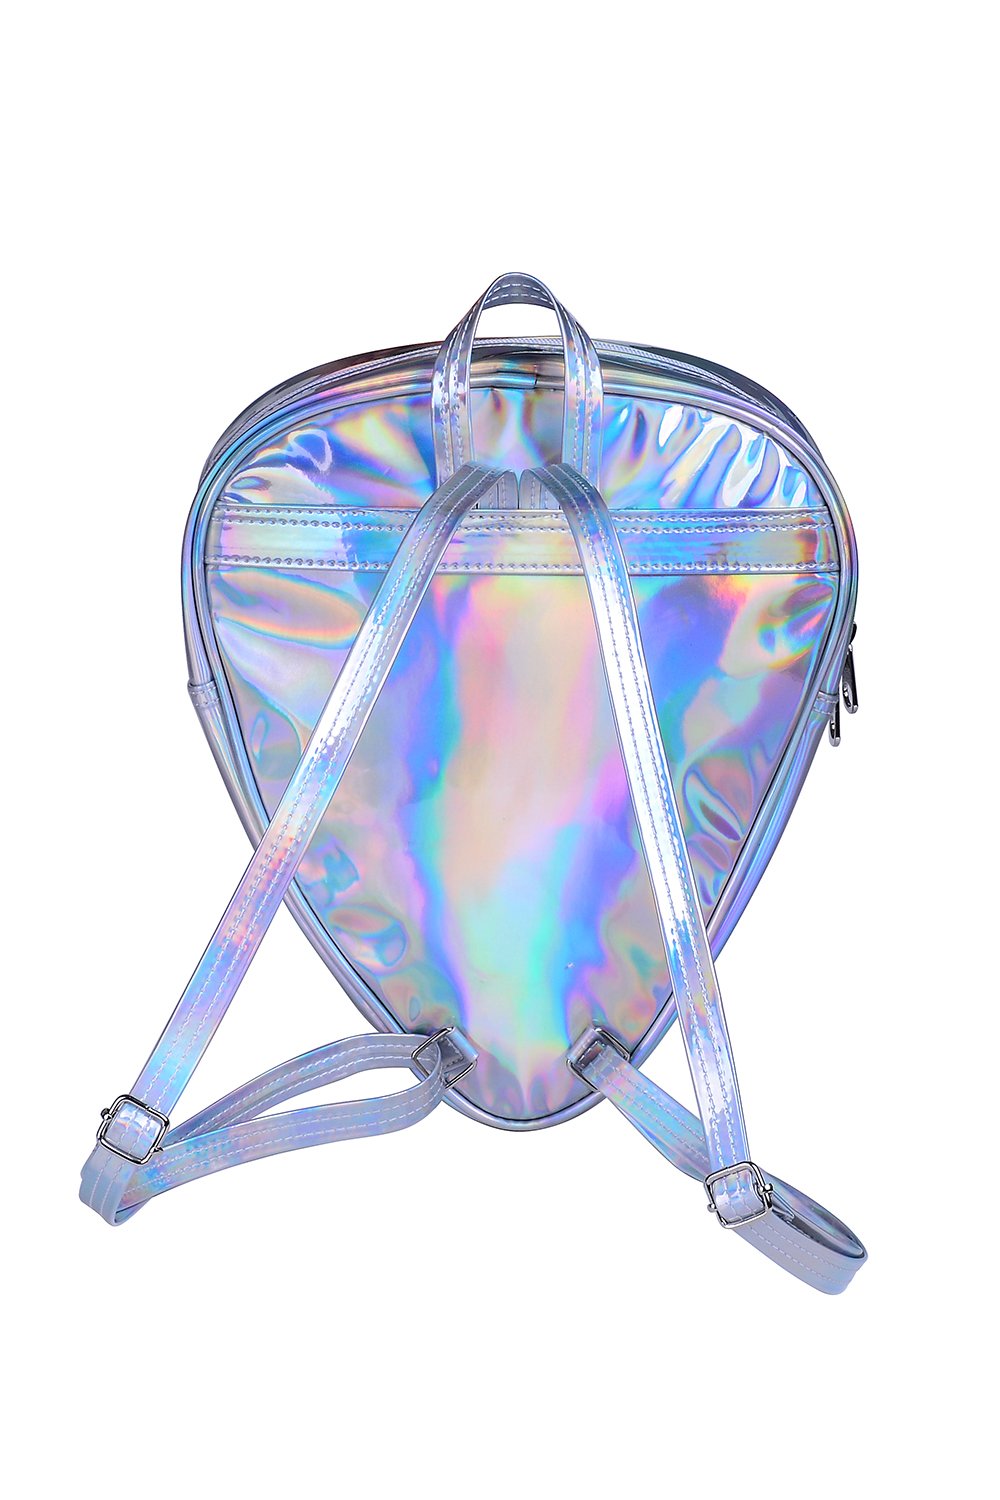 Festival Bag - Alien Backpack Holographic